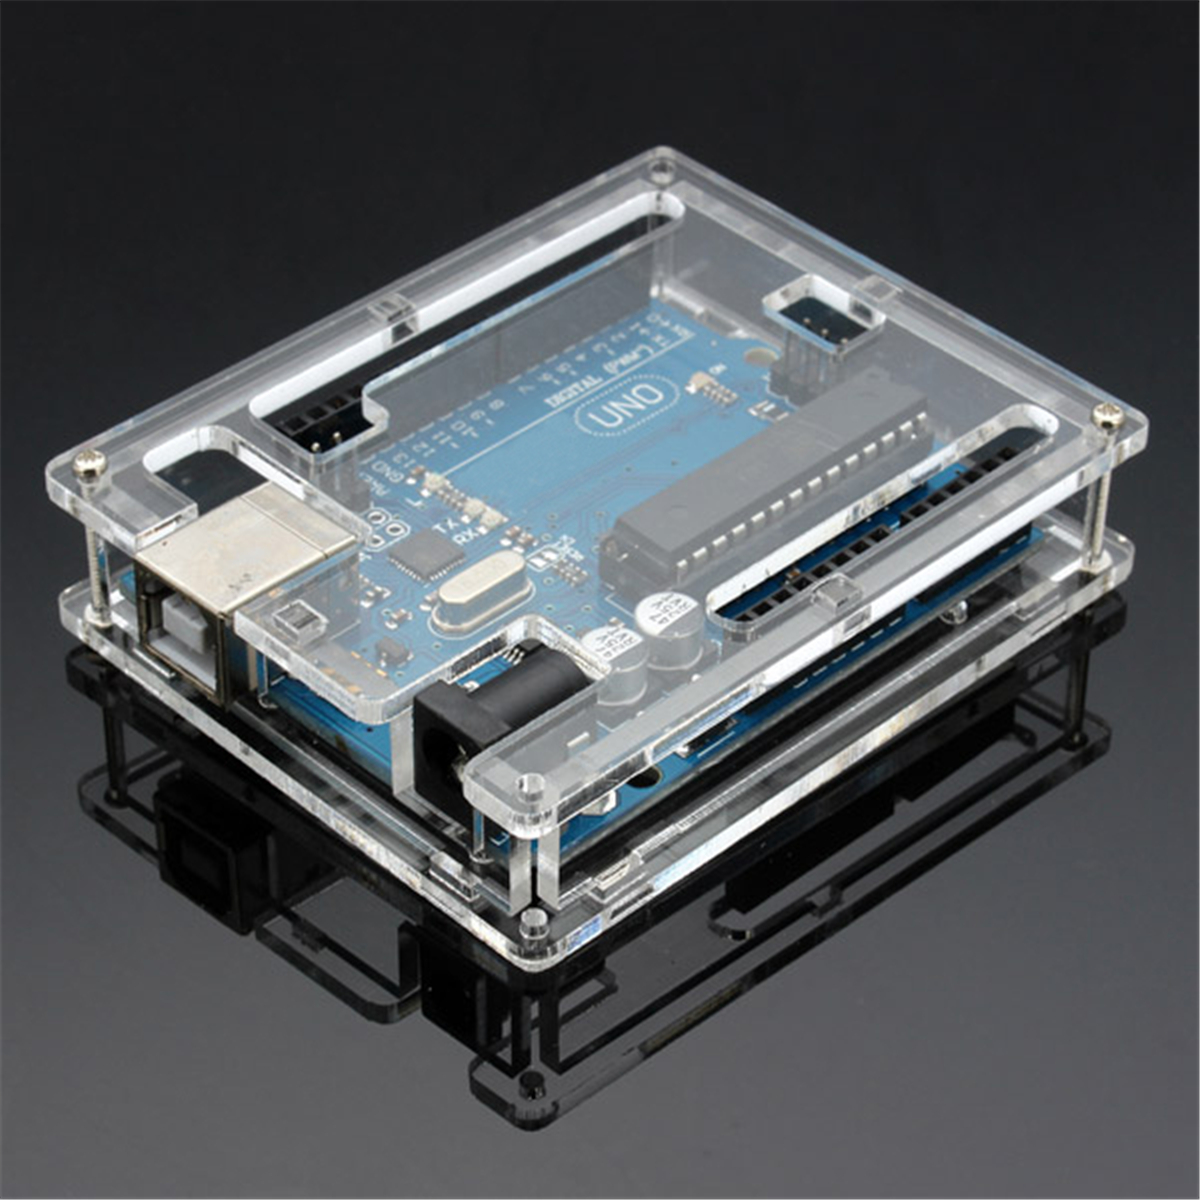 

Geekcreit® UNO R3 ATmega16U2 AVR USB Development Board With Housing For Arduino